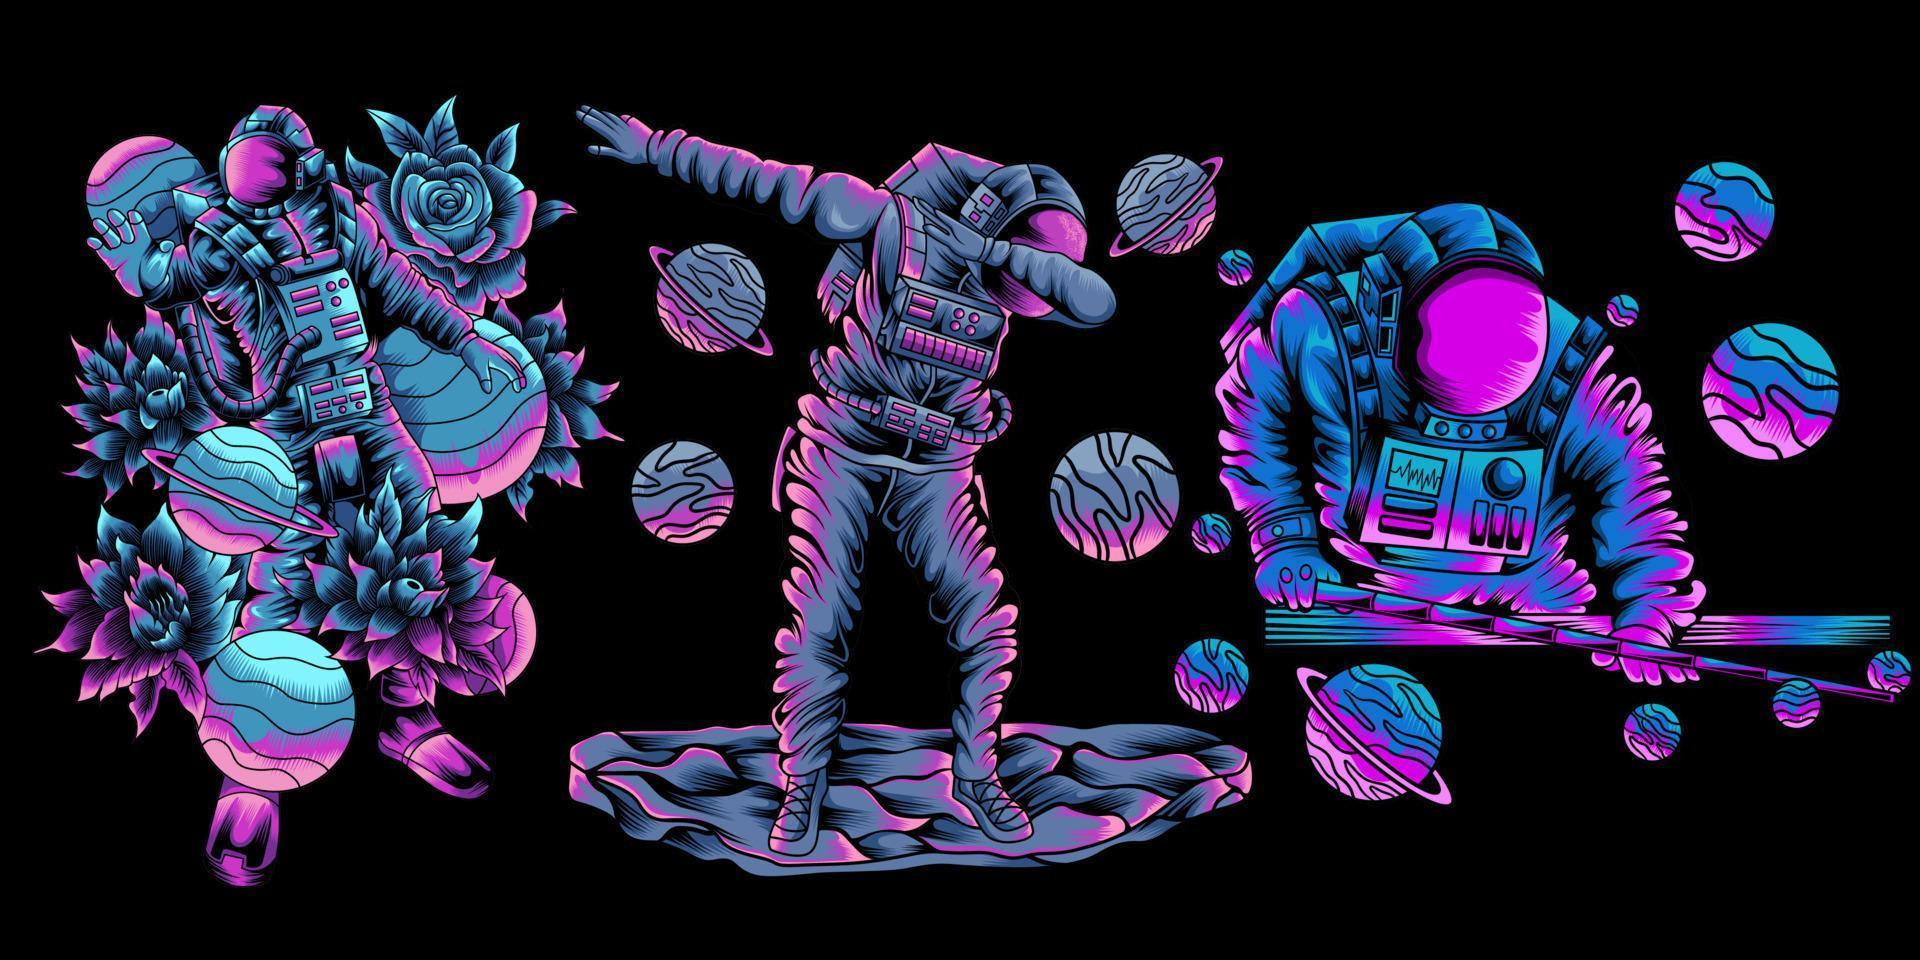 verzameling illustraties van astronaut die biljart speelt in de ruimte, deppen. hand getekende vectorillustratie vector